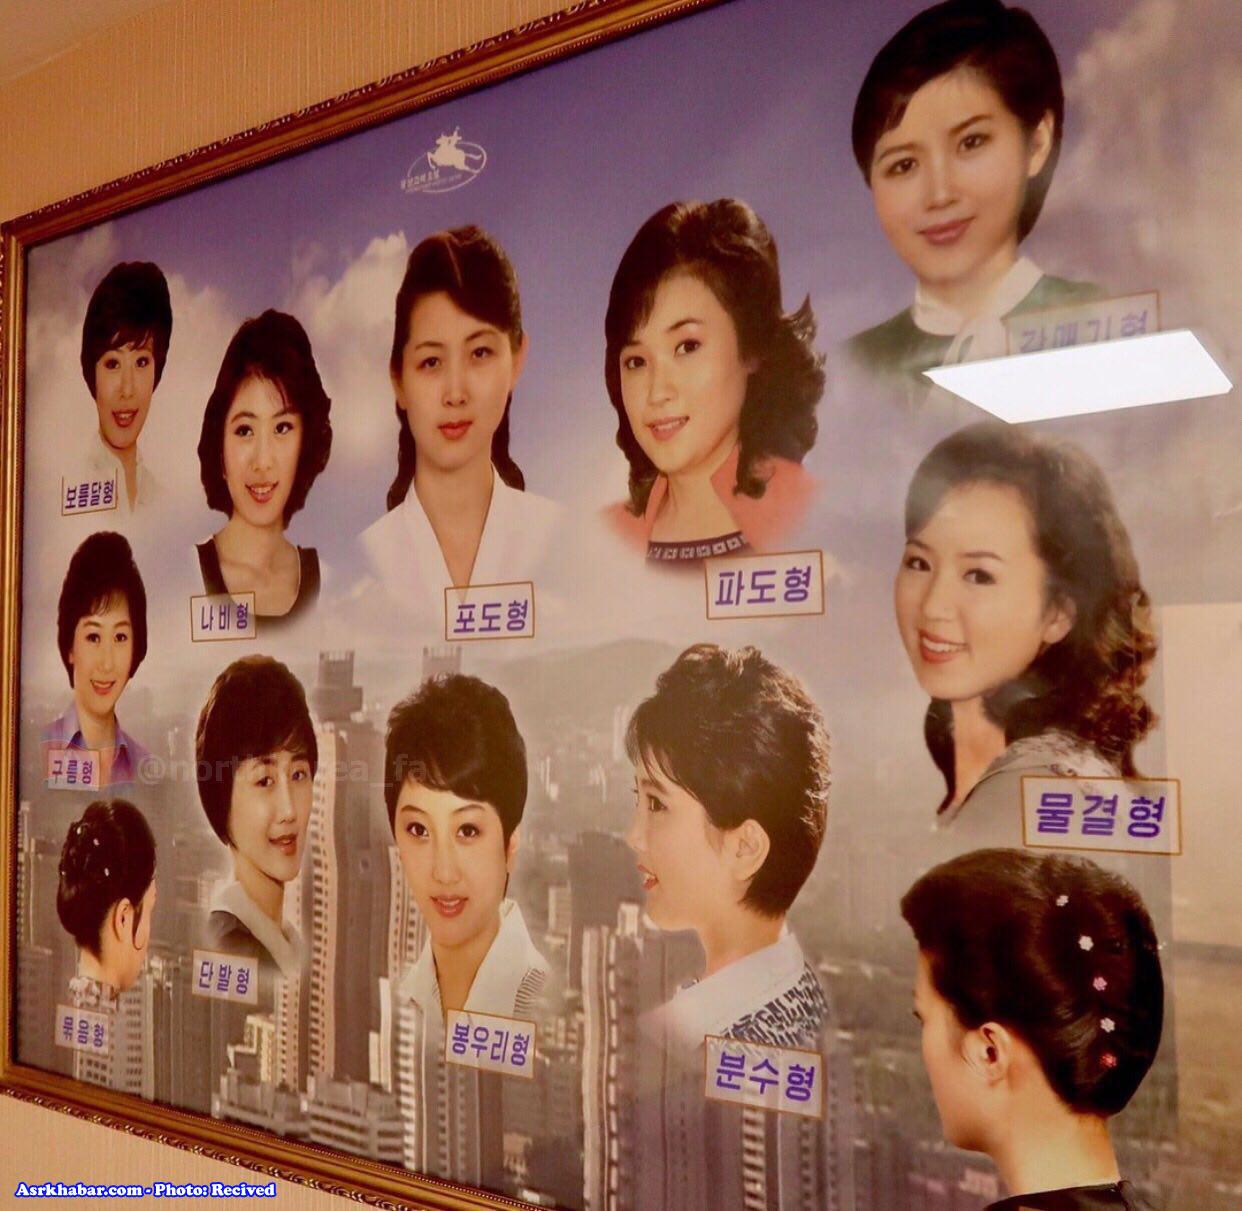 مدل موی مجاز زنان و مردان در کره شمالی (عکس)